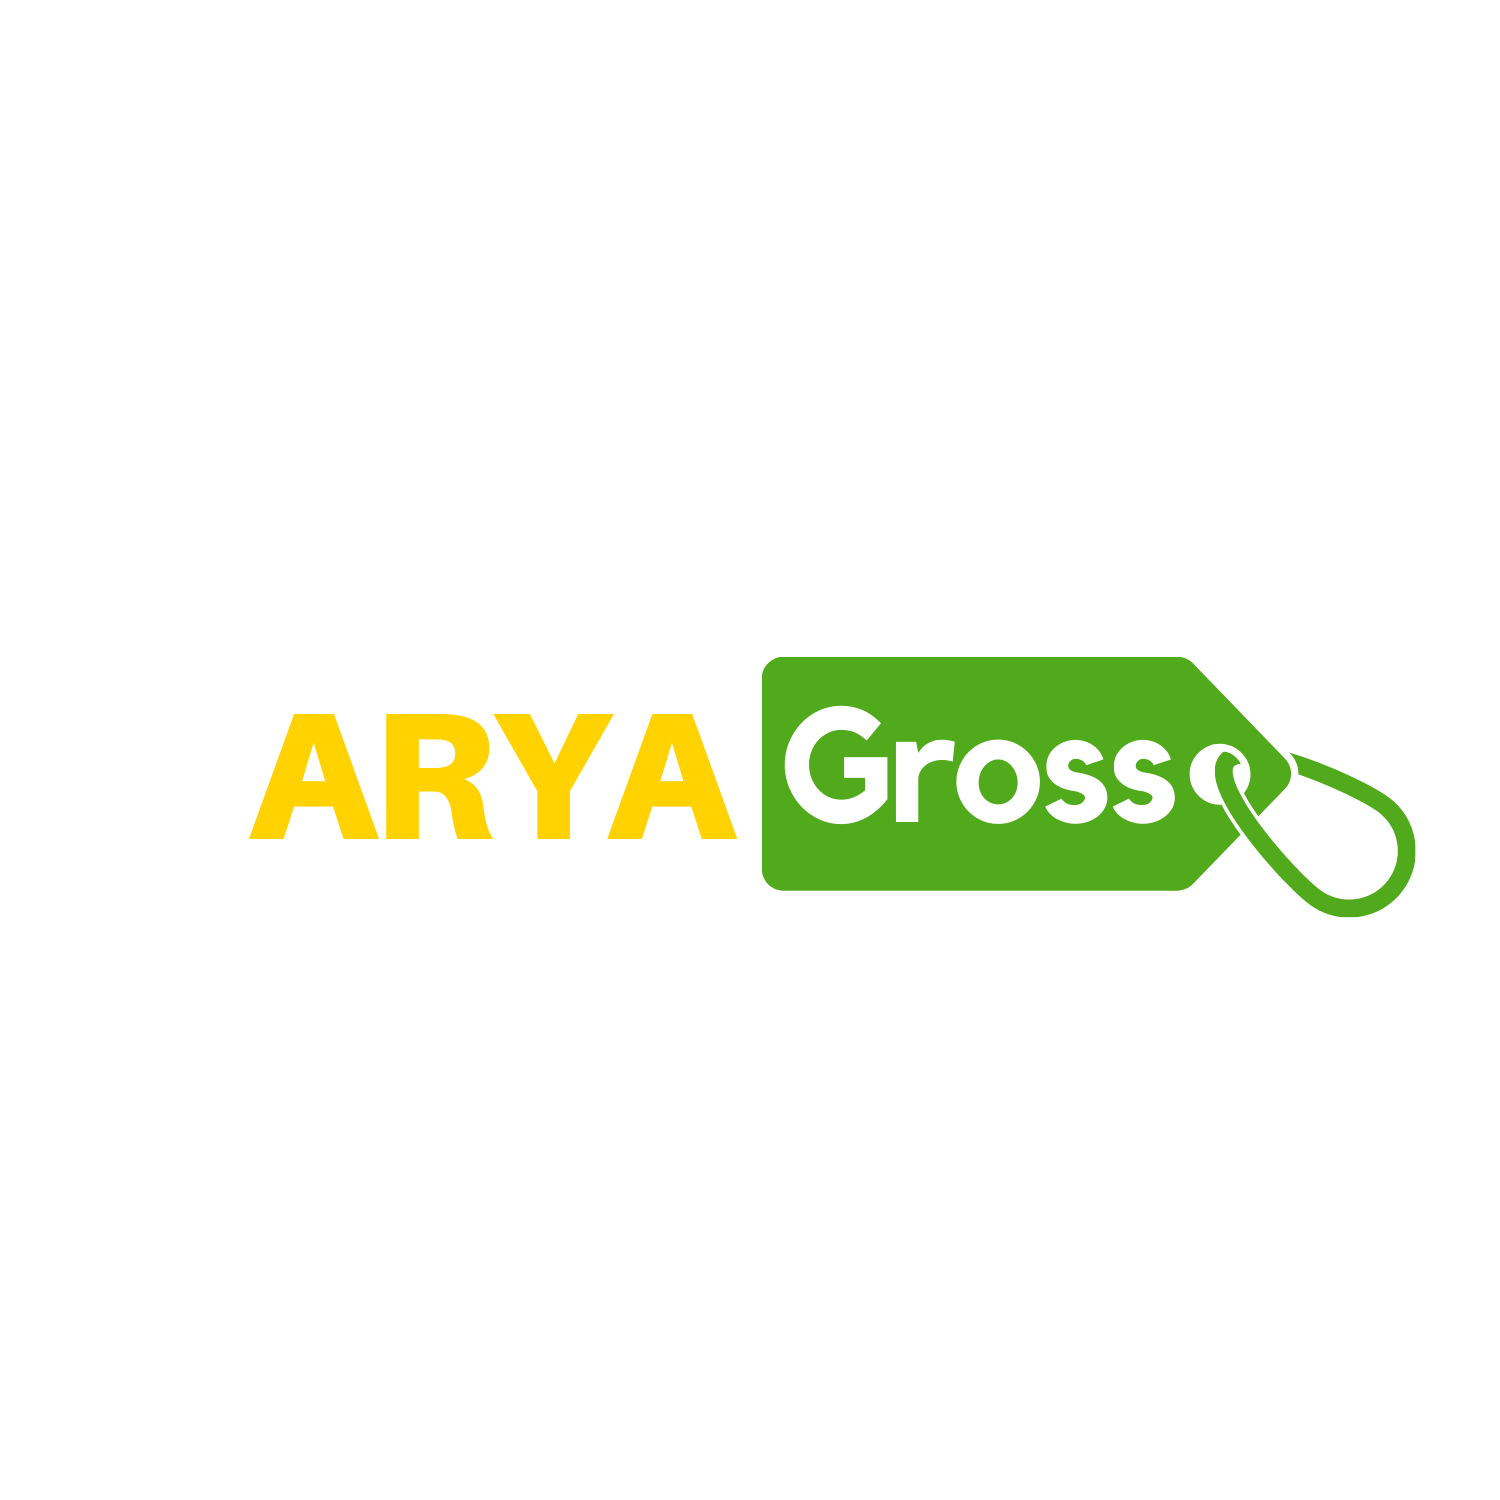 www.aryagross.com